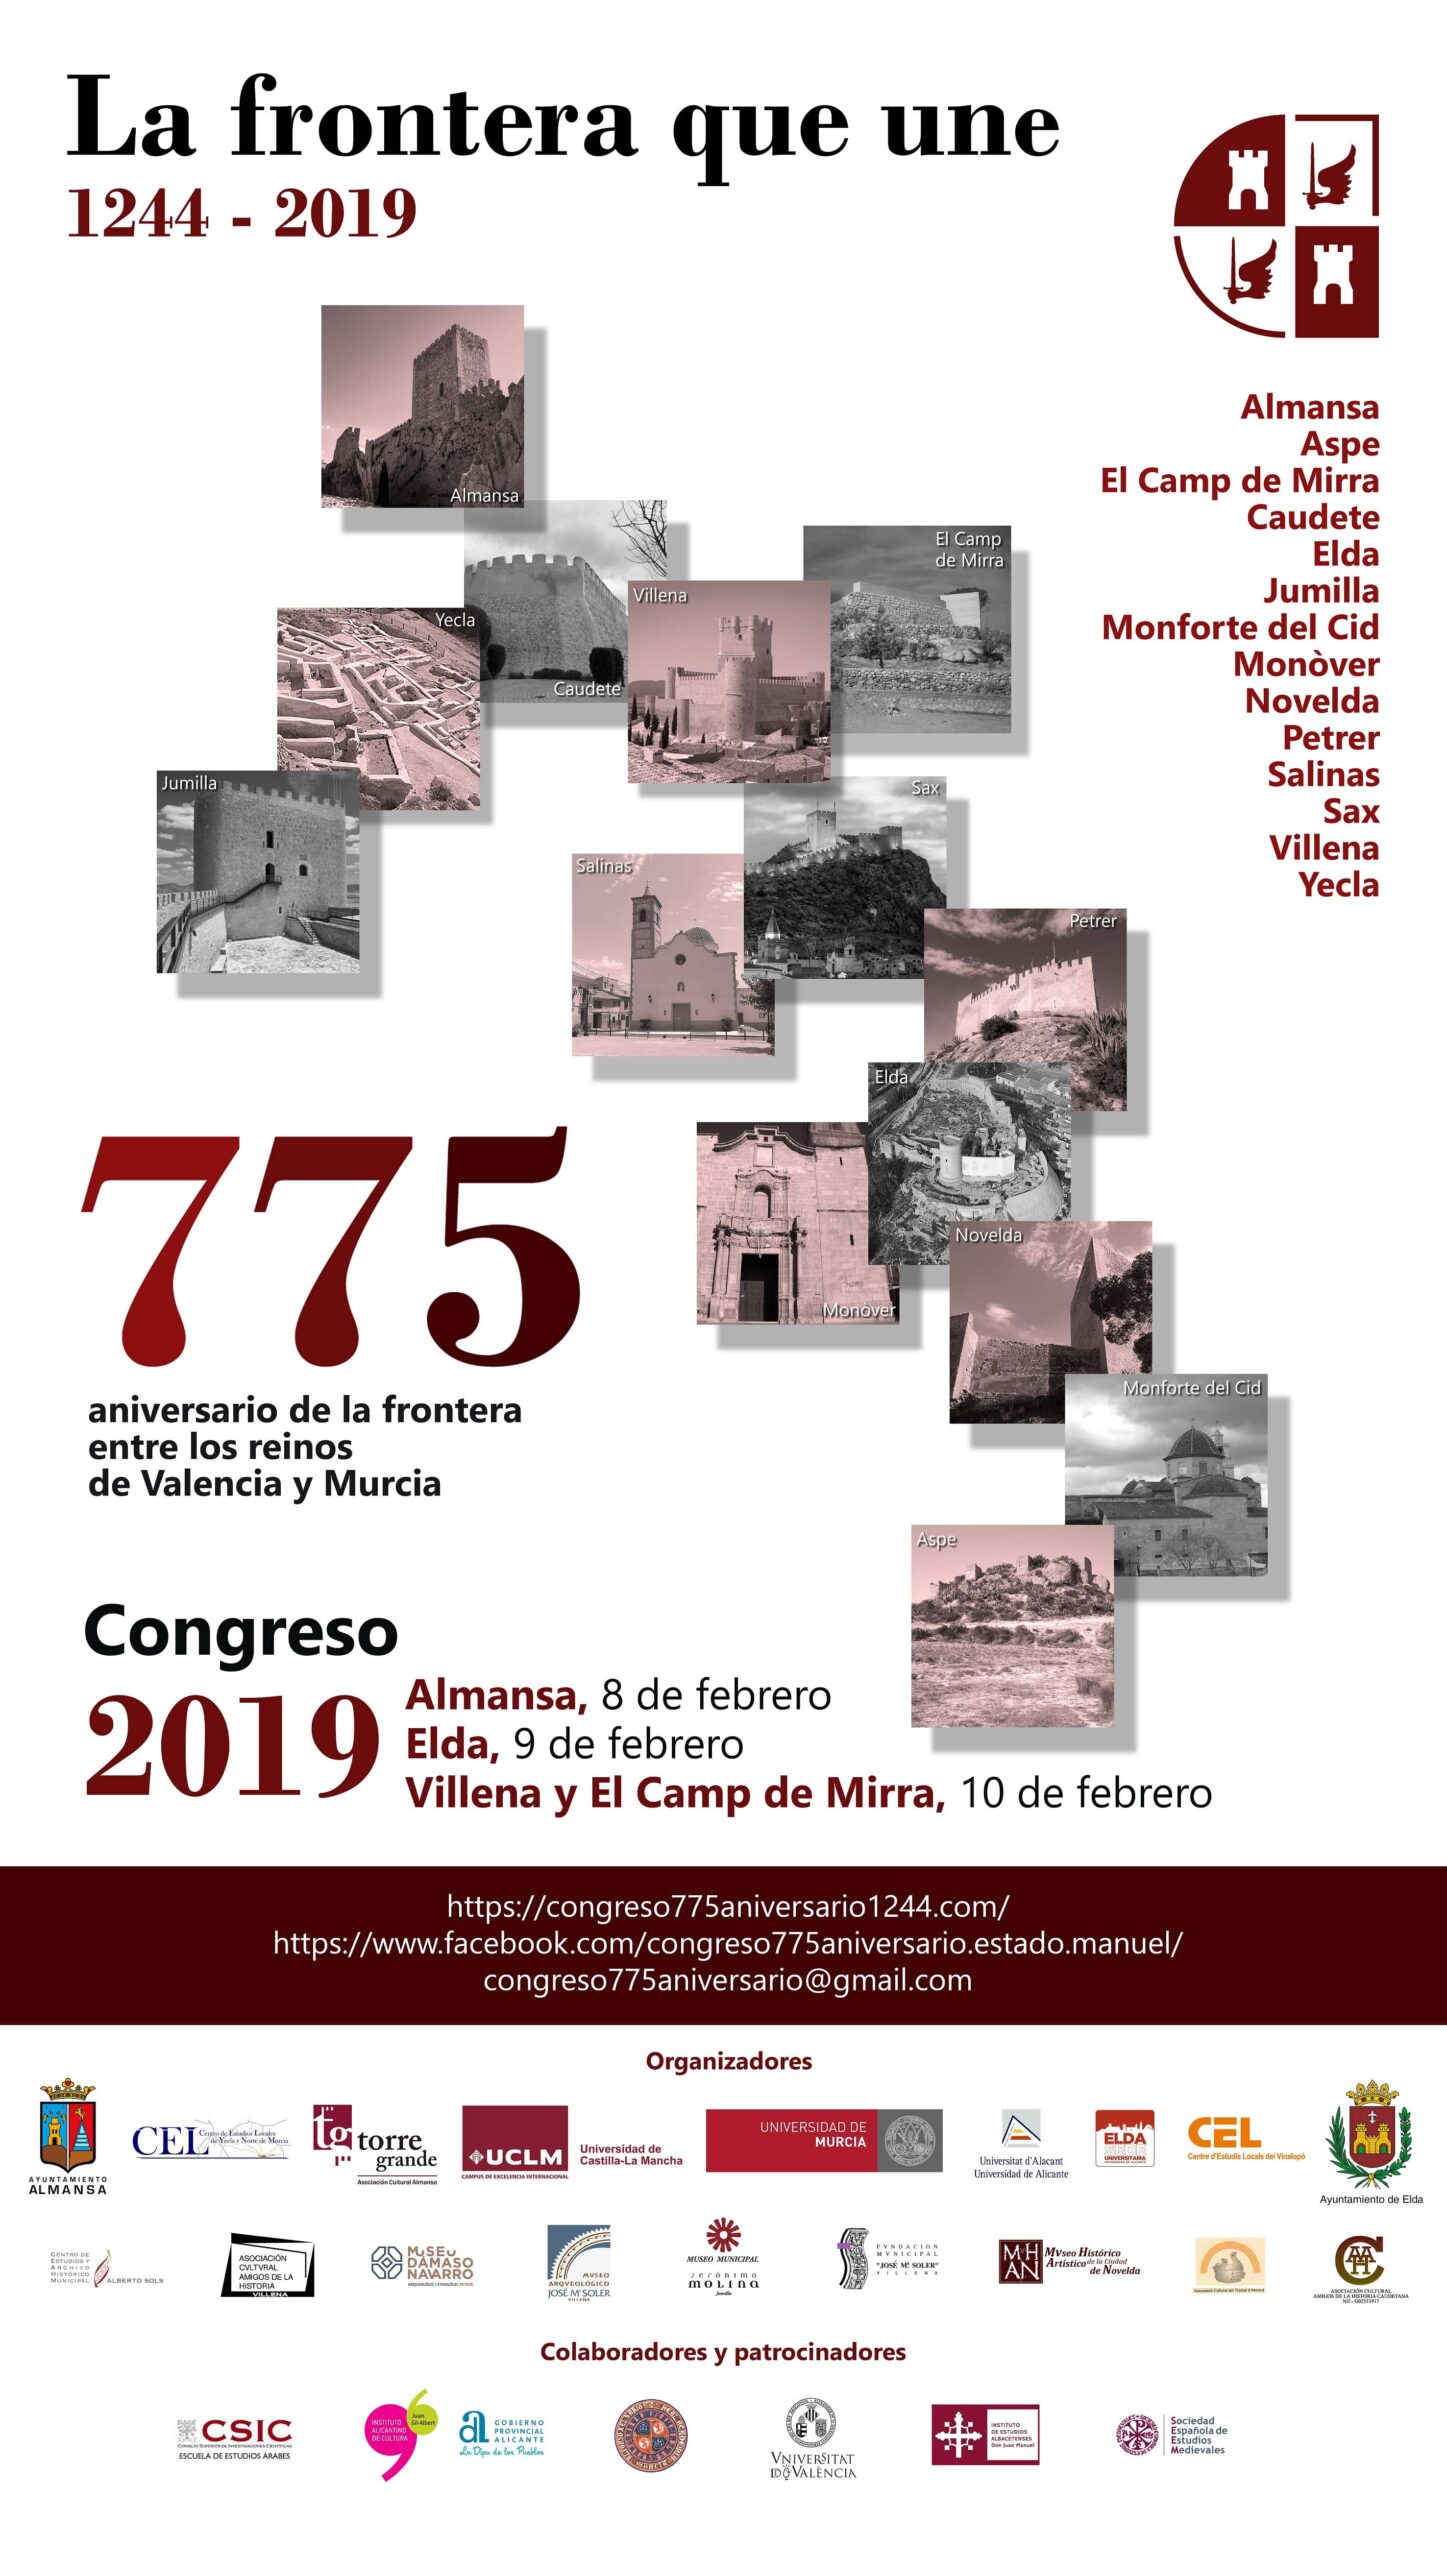 Villena participa en el Congreso del 775 aniversario del tratado de Almizra